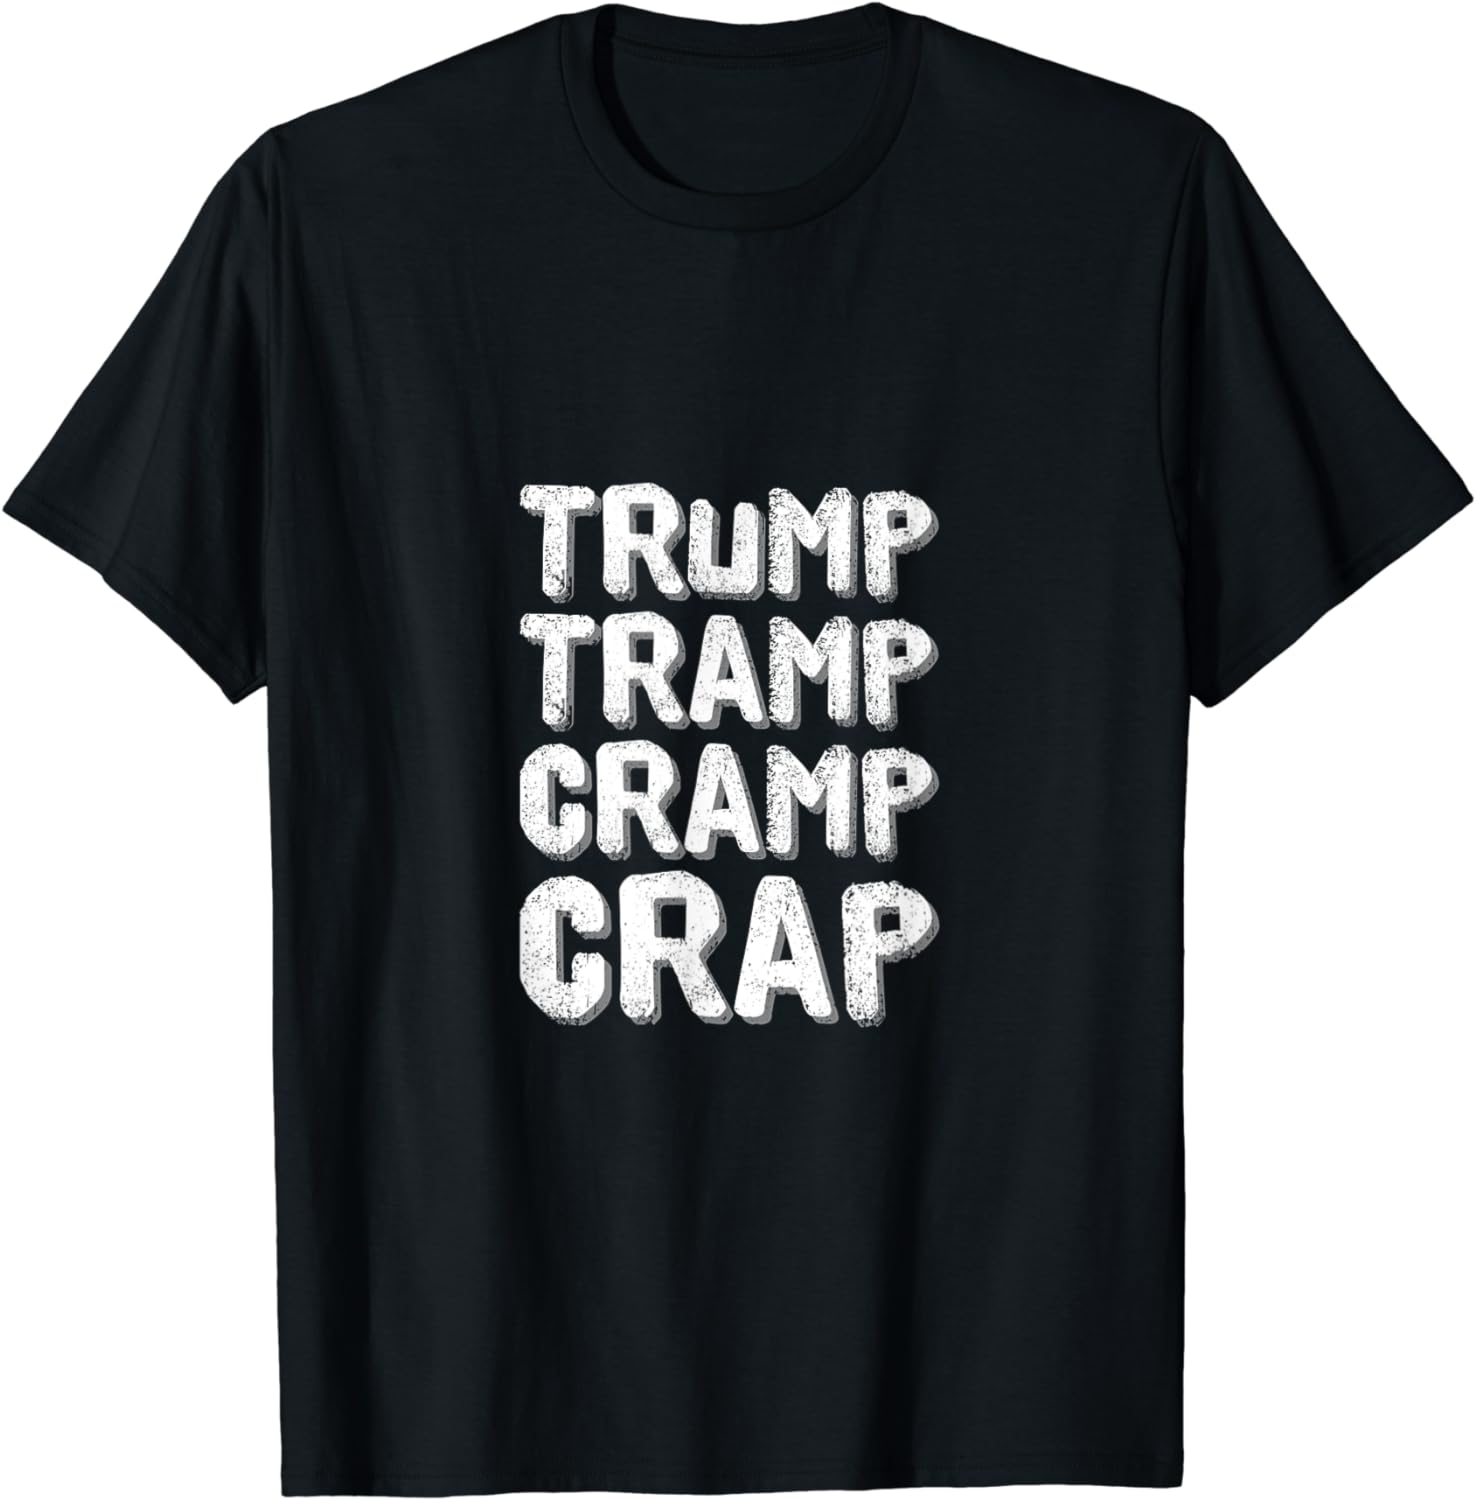 Trump-Tramp-Cramp-Crap word play T-Shirt